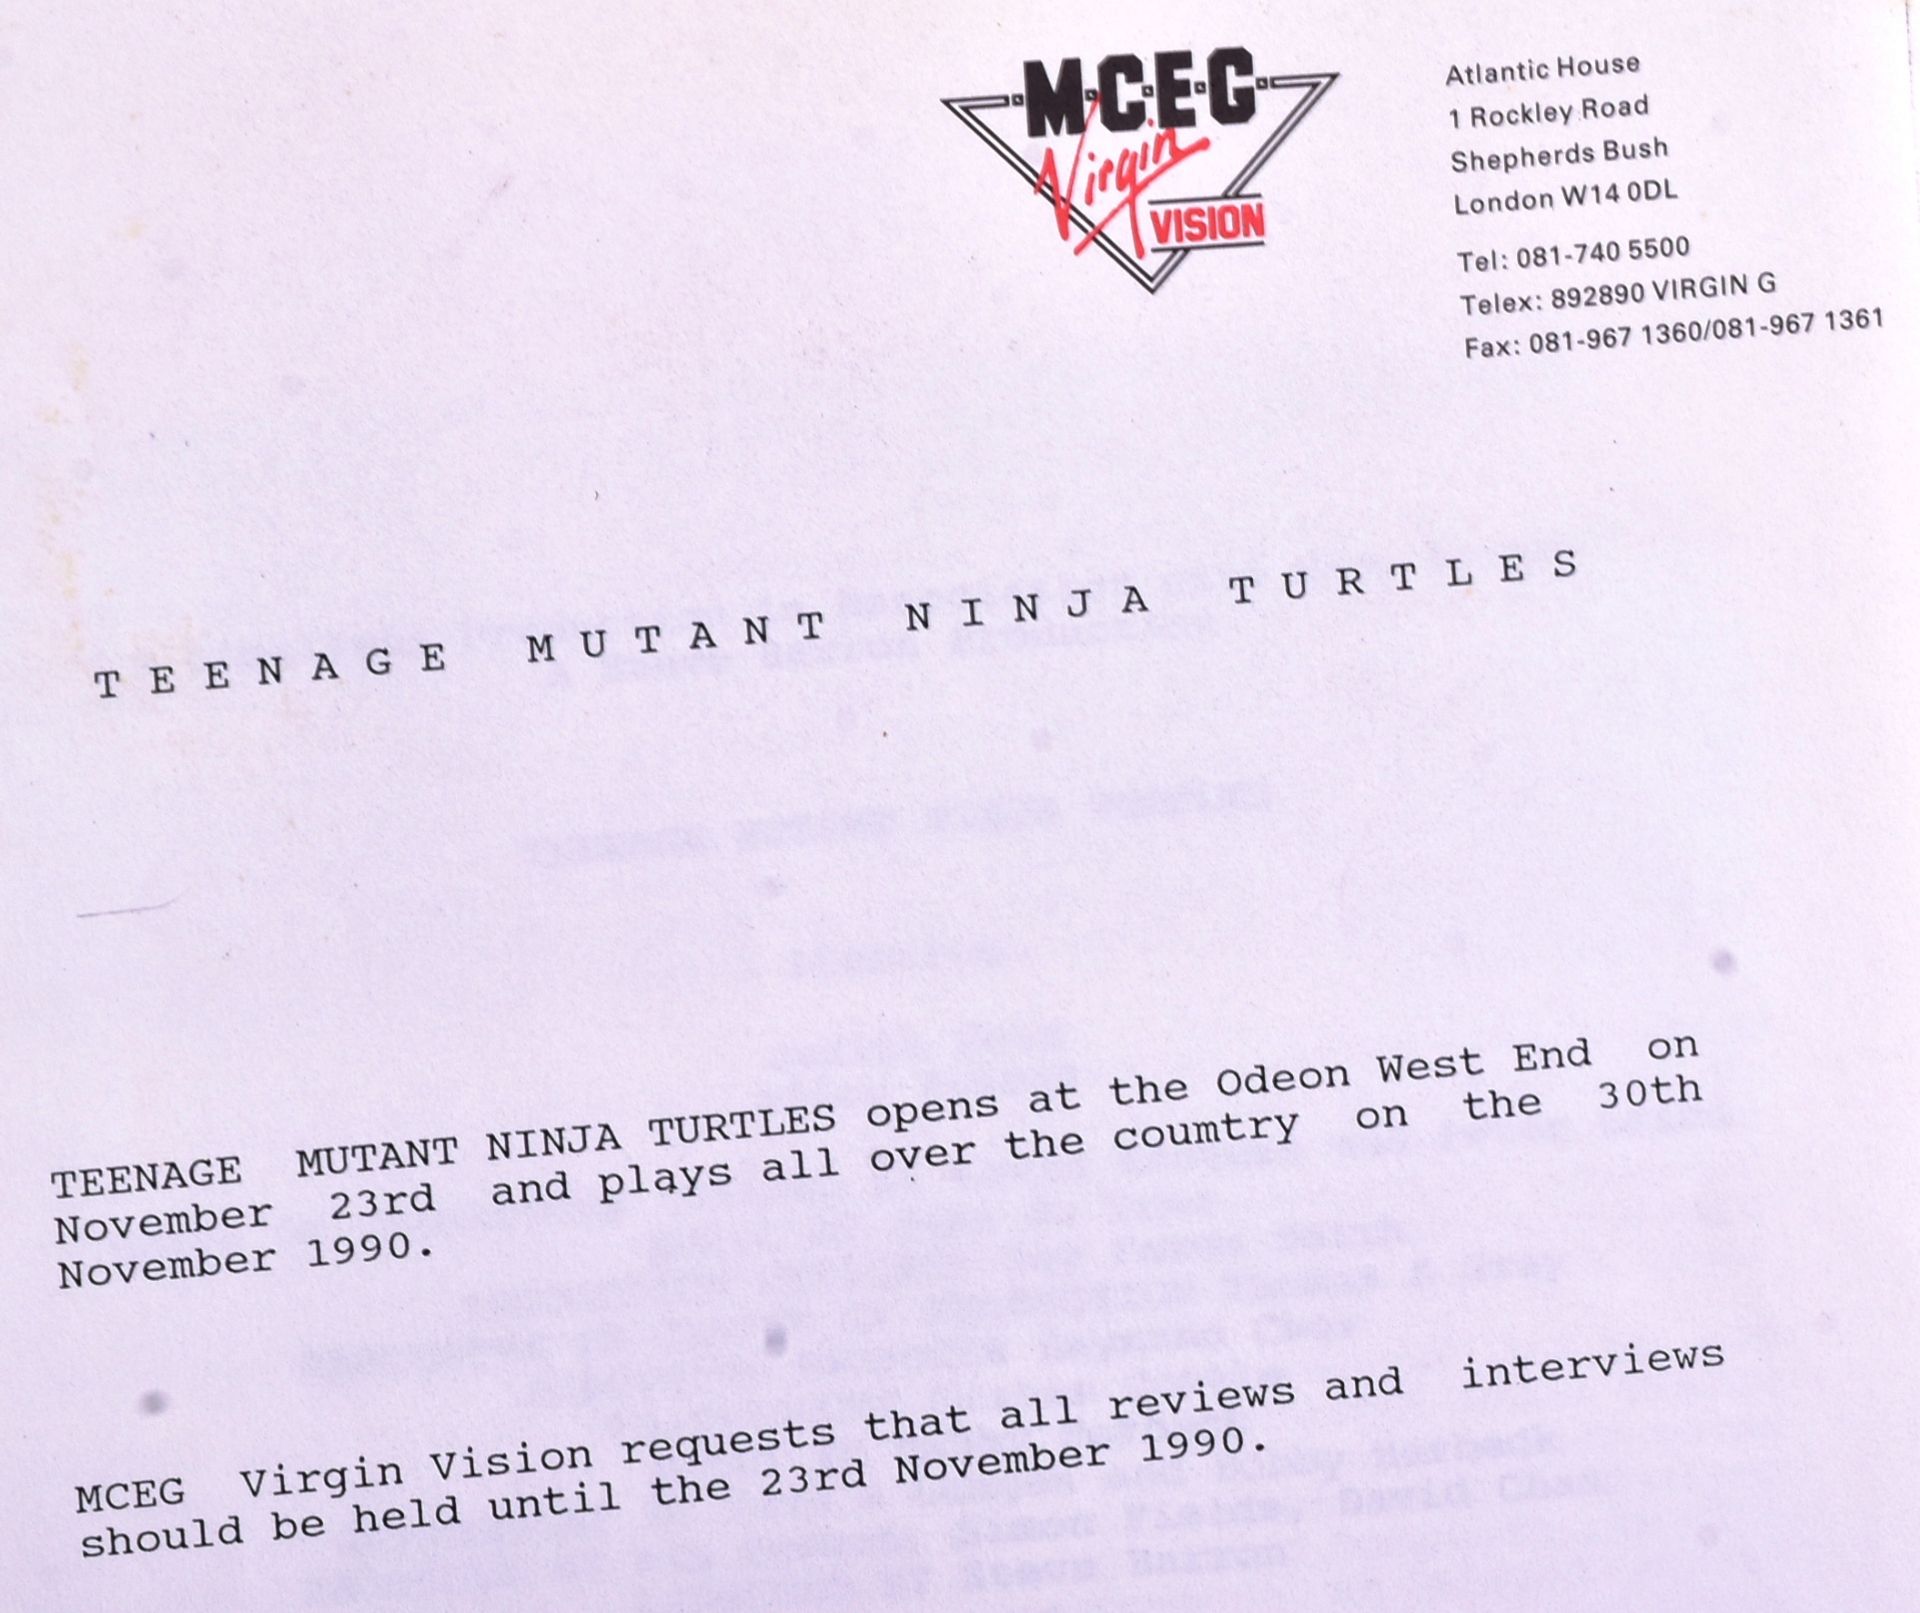 TEENAGE MUTANT NINJA TURTLES (1990) - UK FILM PRESS PACK - Image 5 of 5